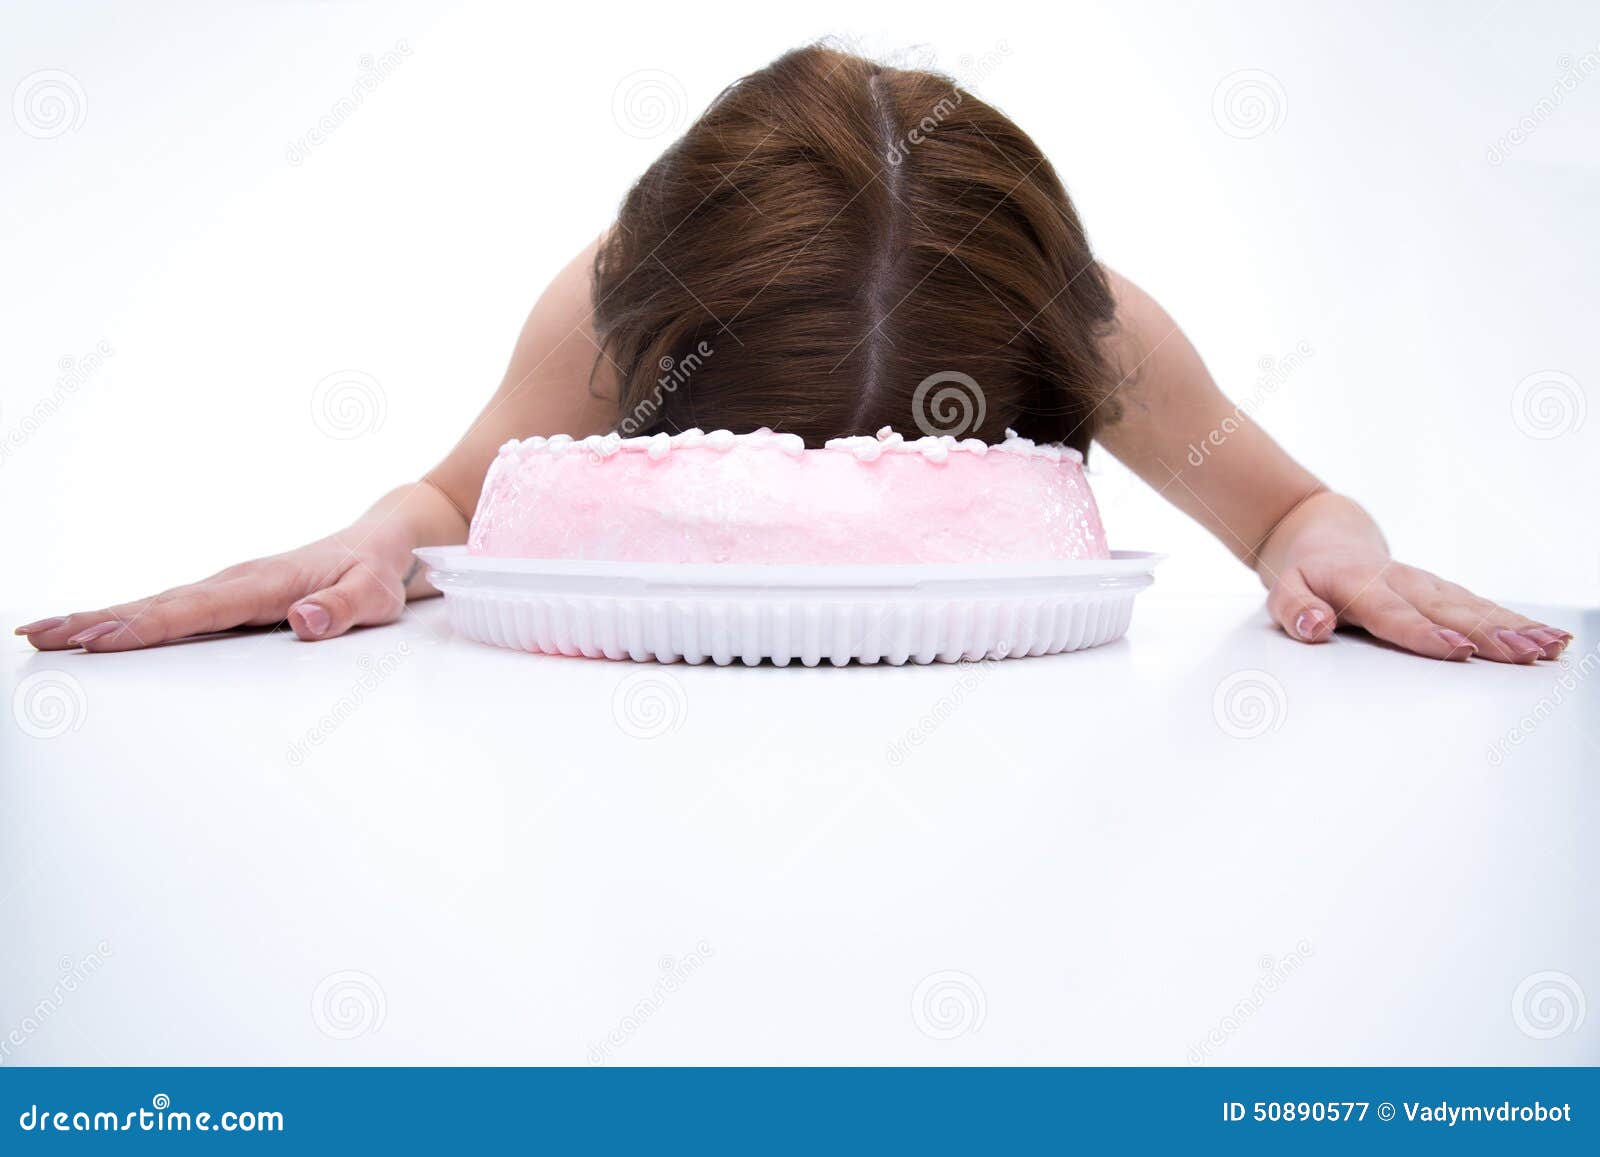 Девушку ткнули лицом в торт штырь. Торт с лицом женщины. Торт с лицом девочки. С днём рождения торт в лицо девушке.